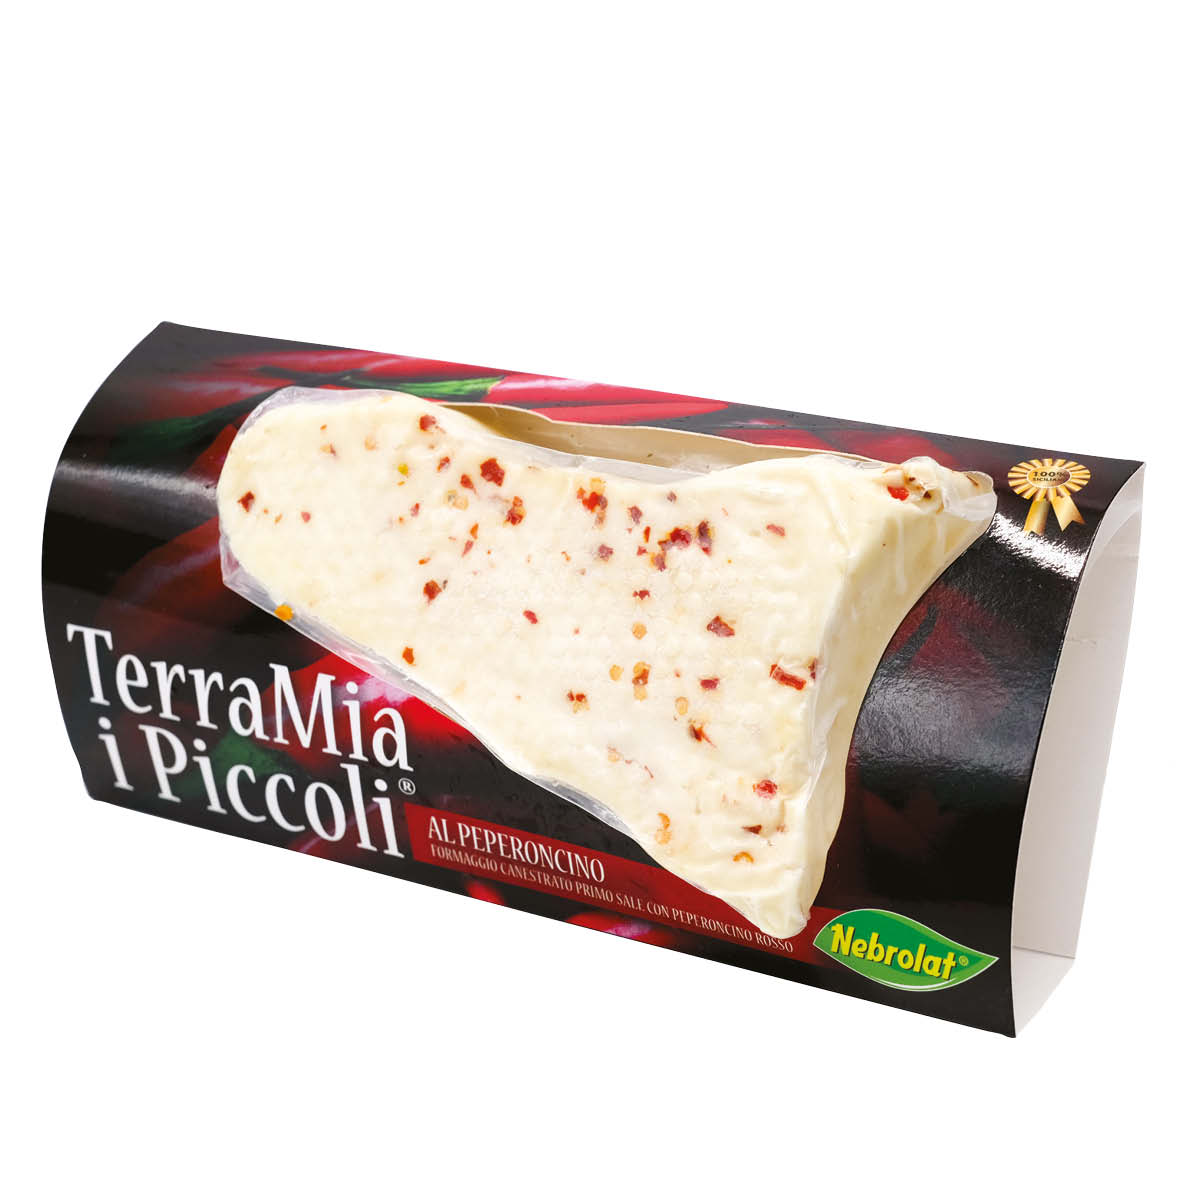 I Piccoli TerraMia® with chili pepper